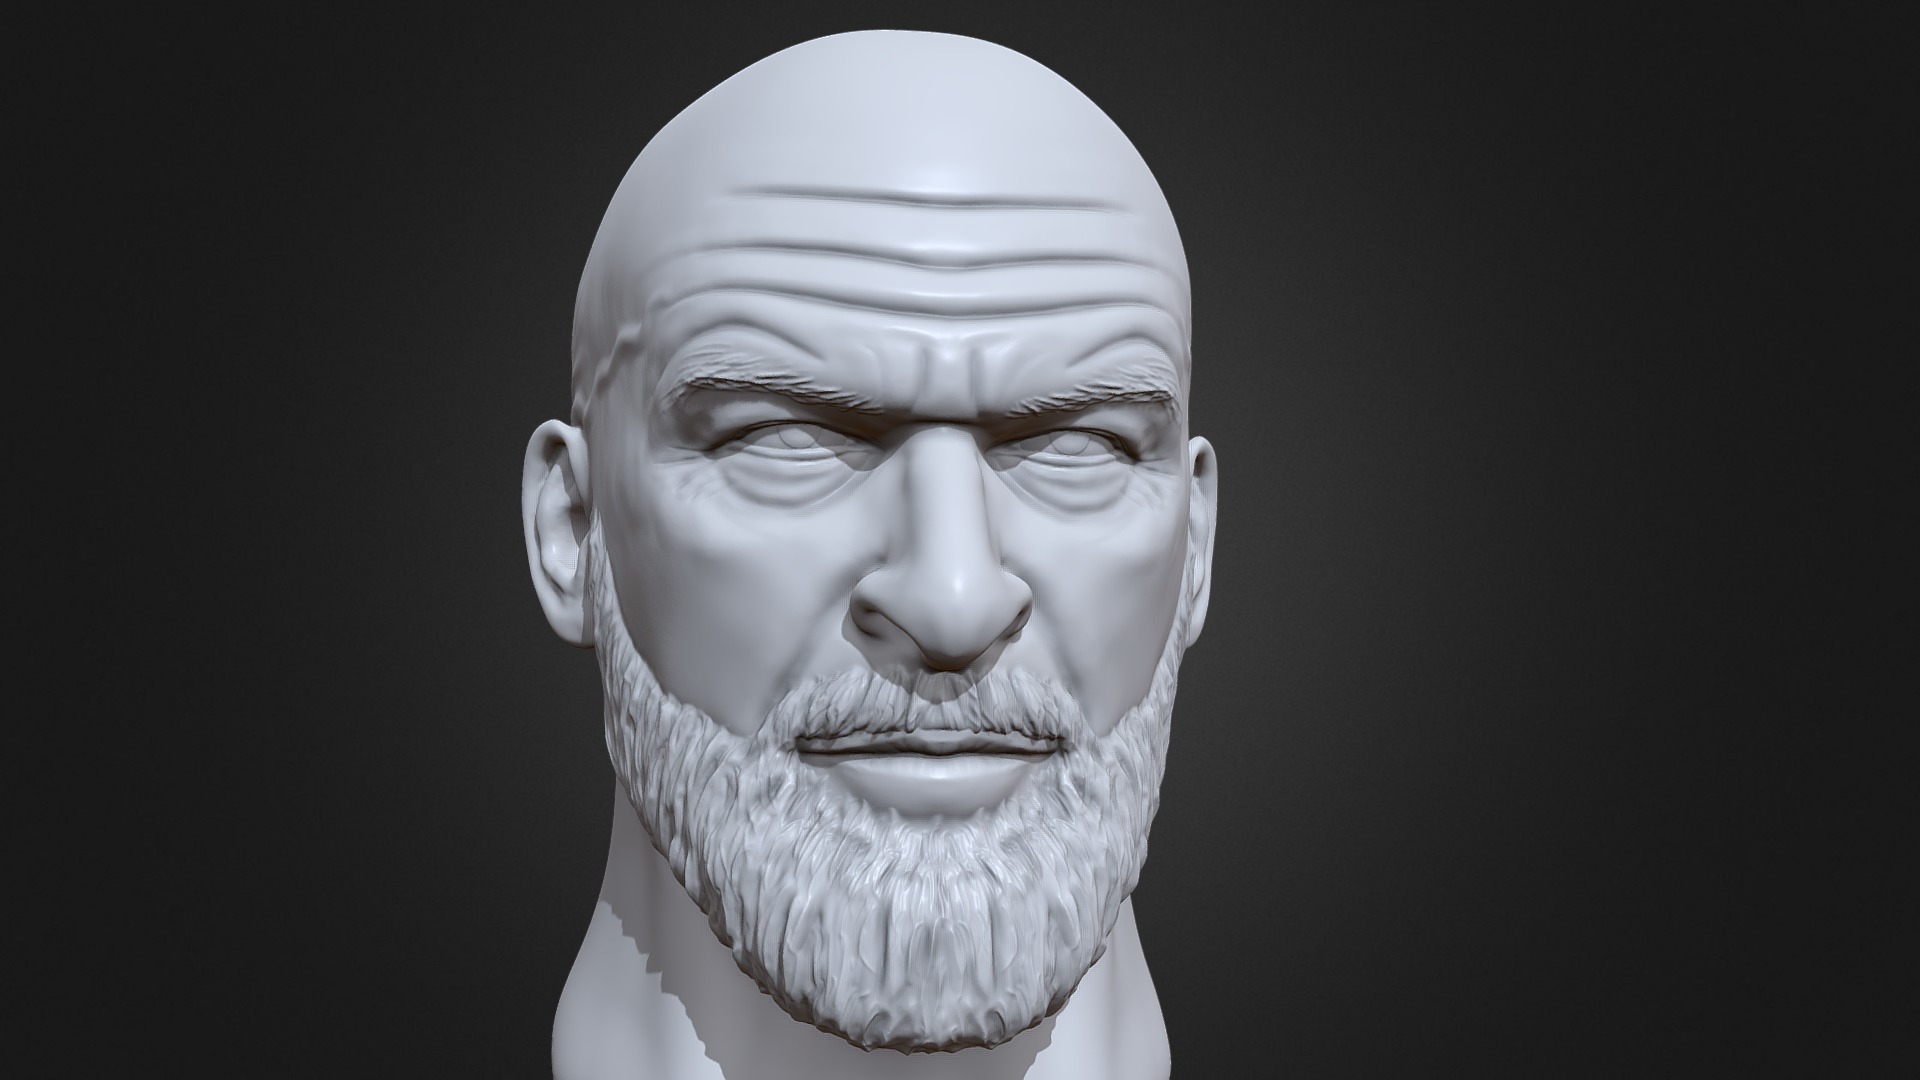 3D model Triple H 3D printable portrait sculpture - This is a 3D model of the Triple H 3D printable portrait sculpture. The 3D model is about a man with a beard.